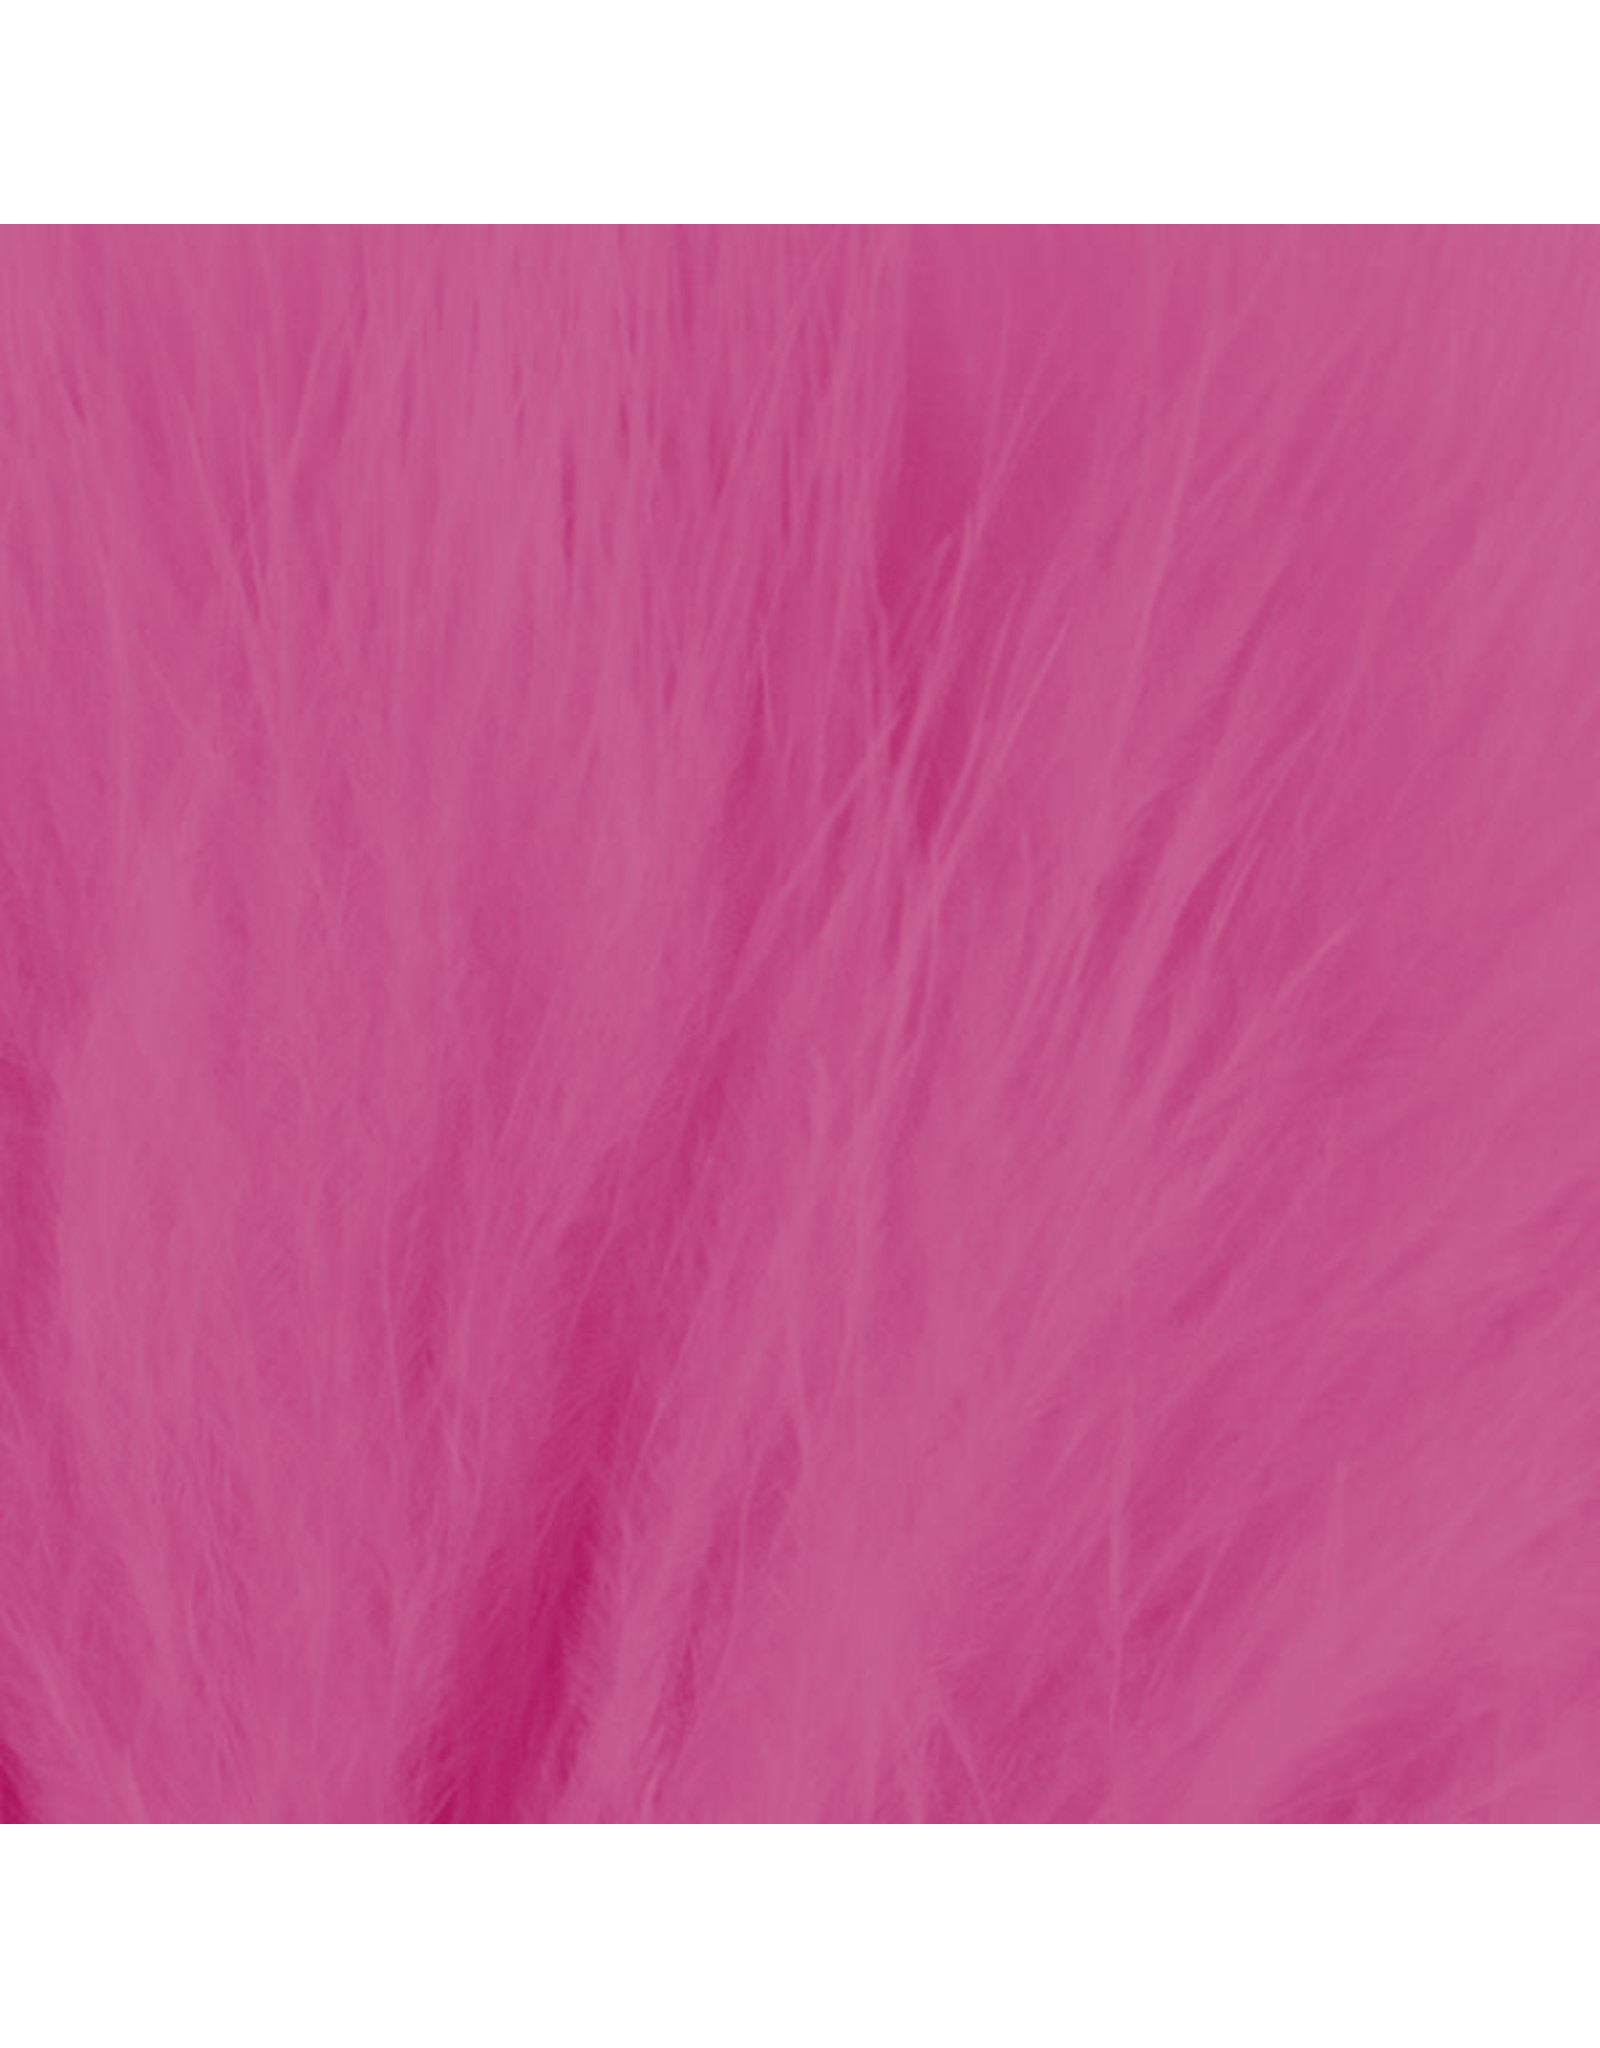 SHOR SHOR Strung Marabou 4" 1/4oz - Pink